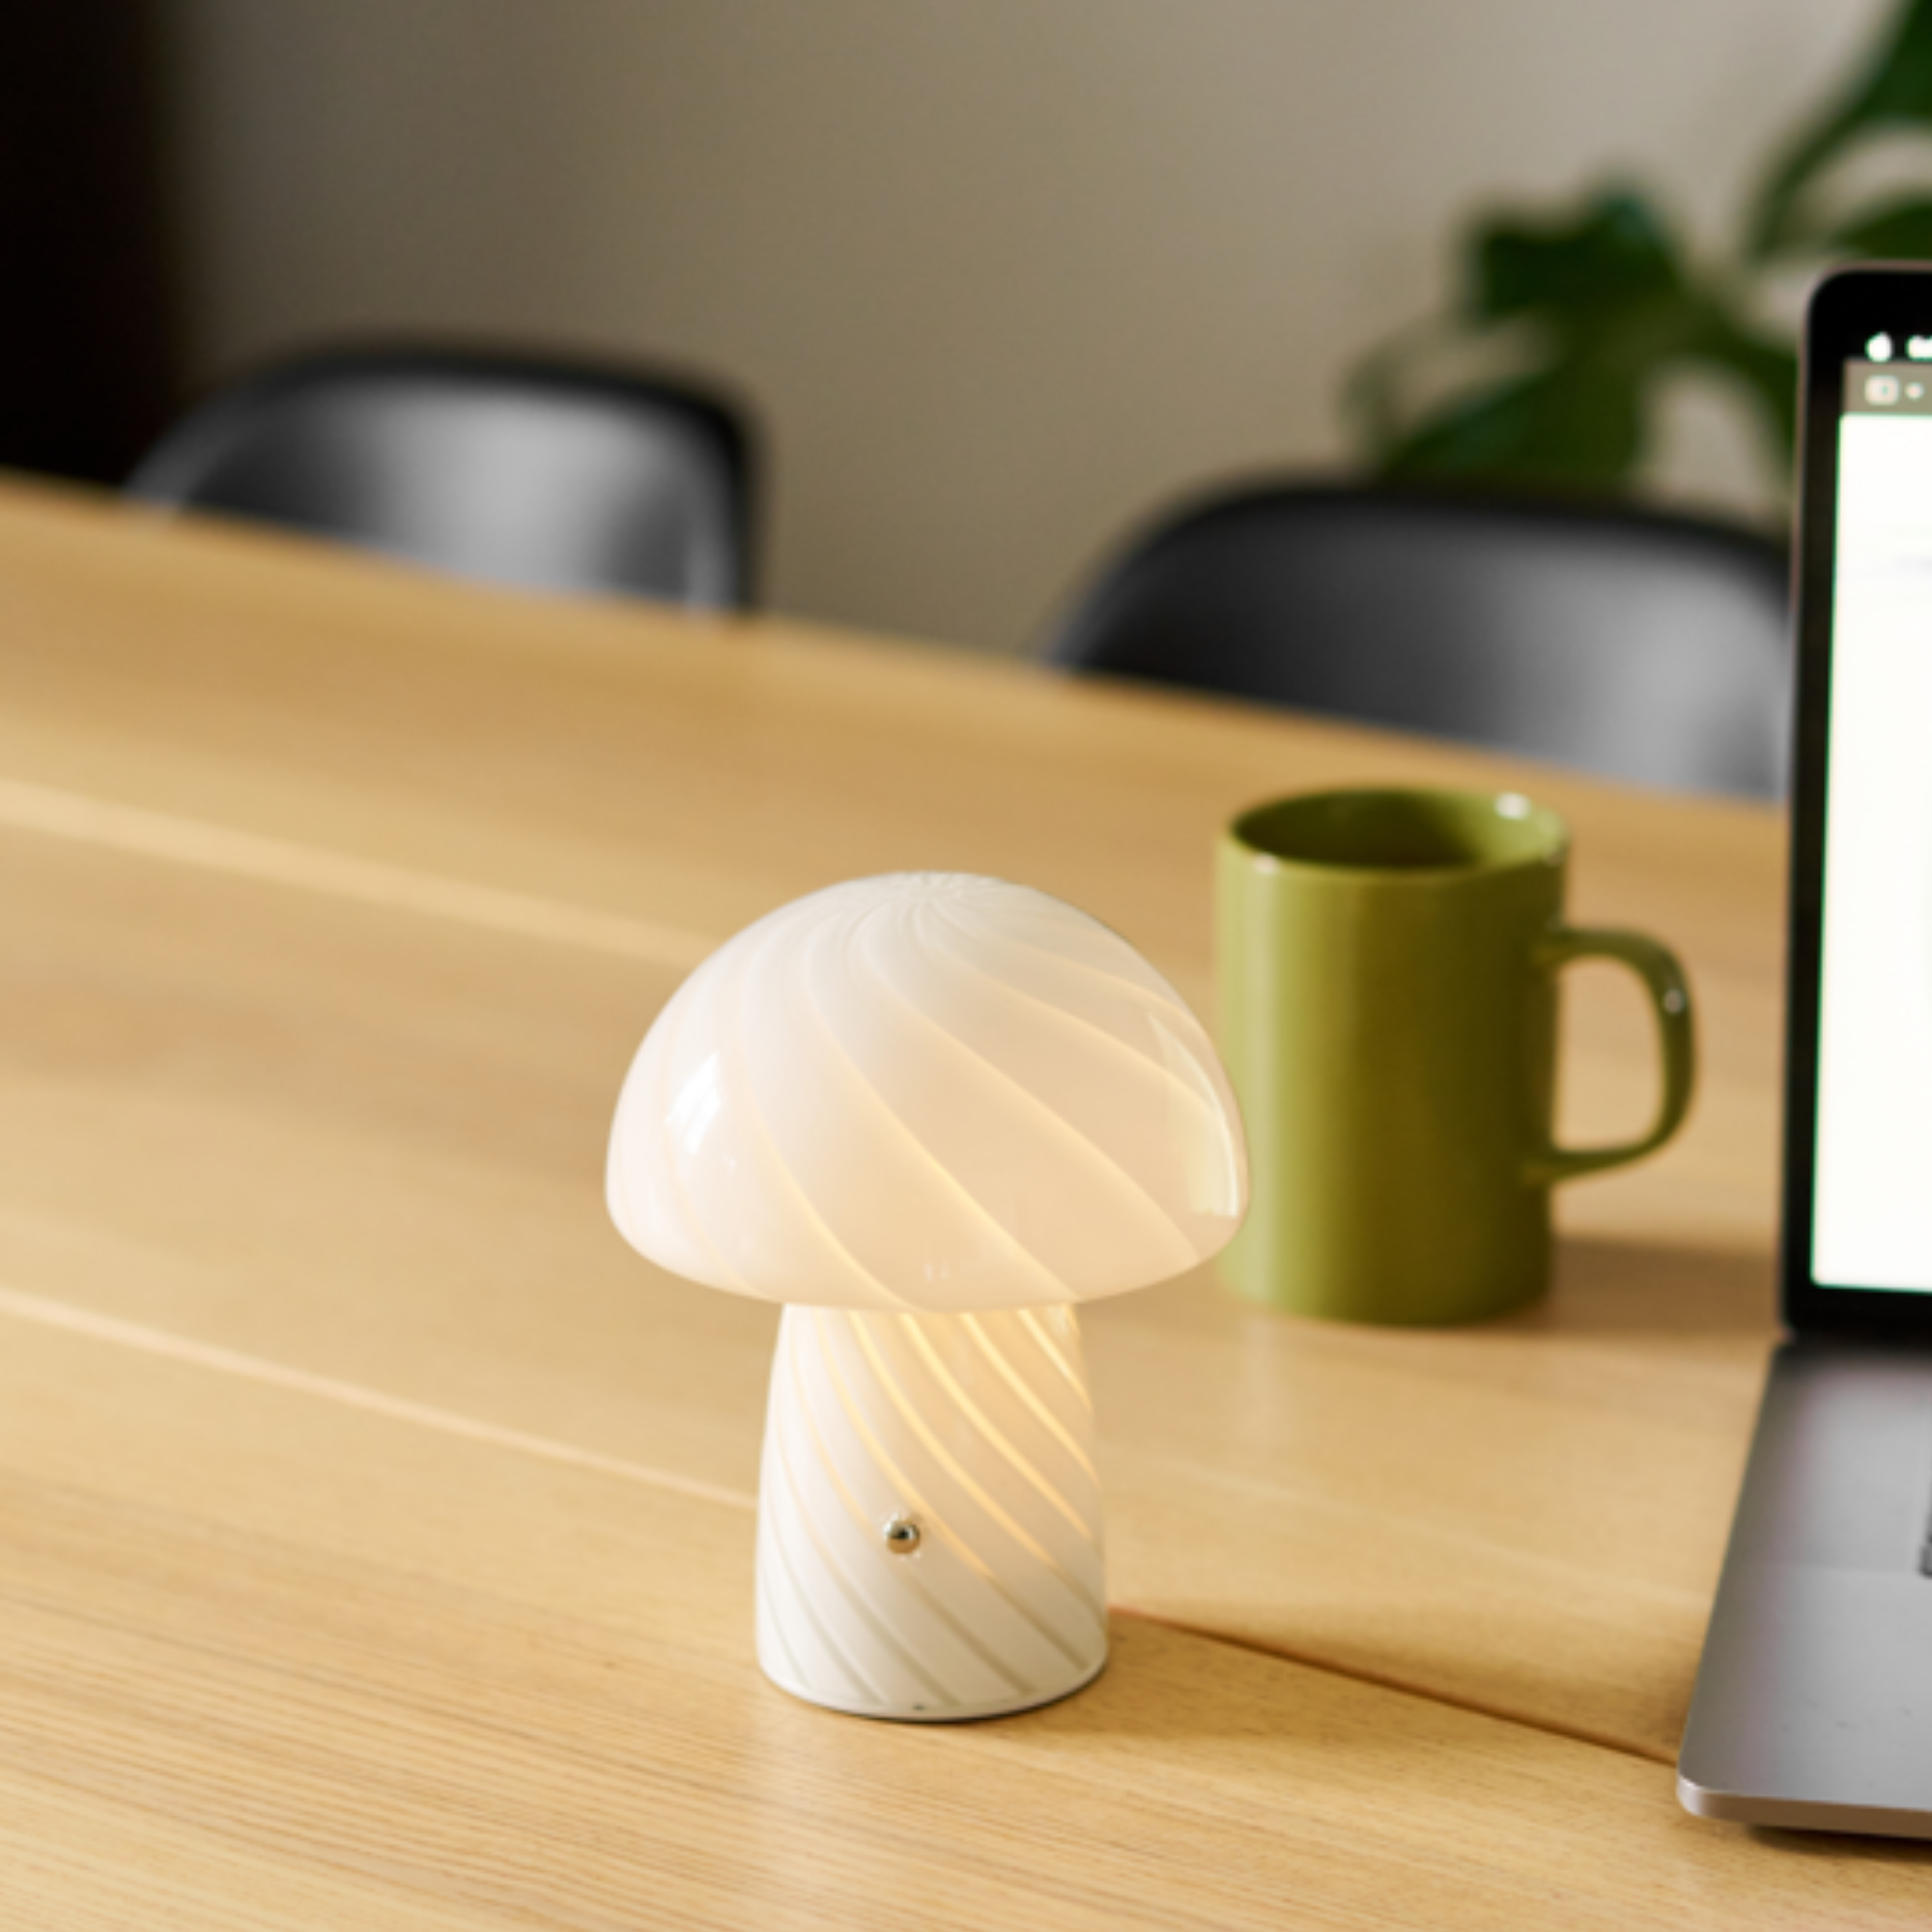 Portable Mini Glass Mushroom Lamp, White